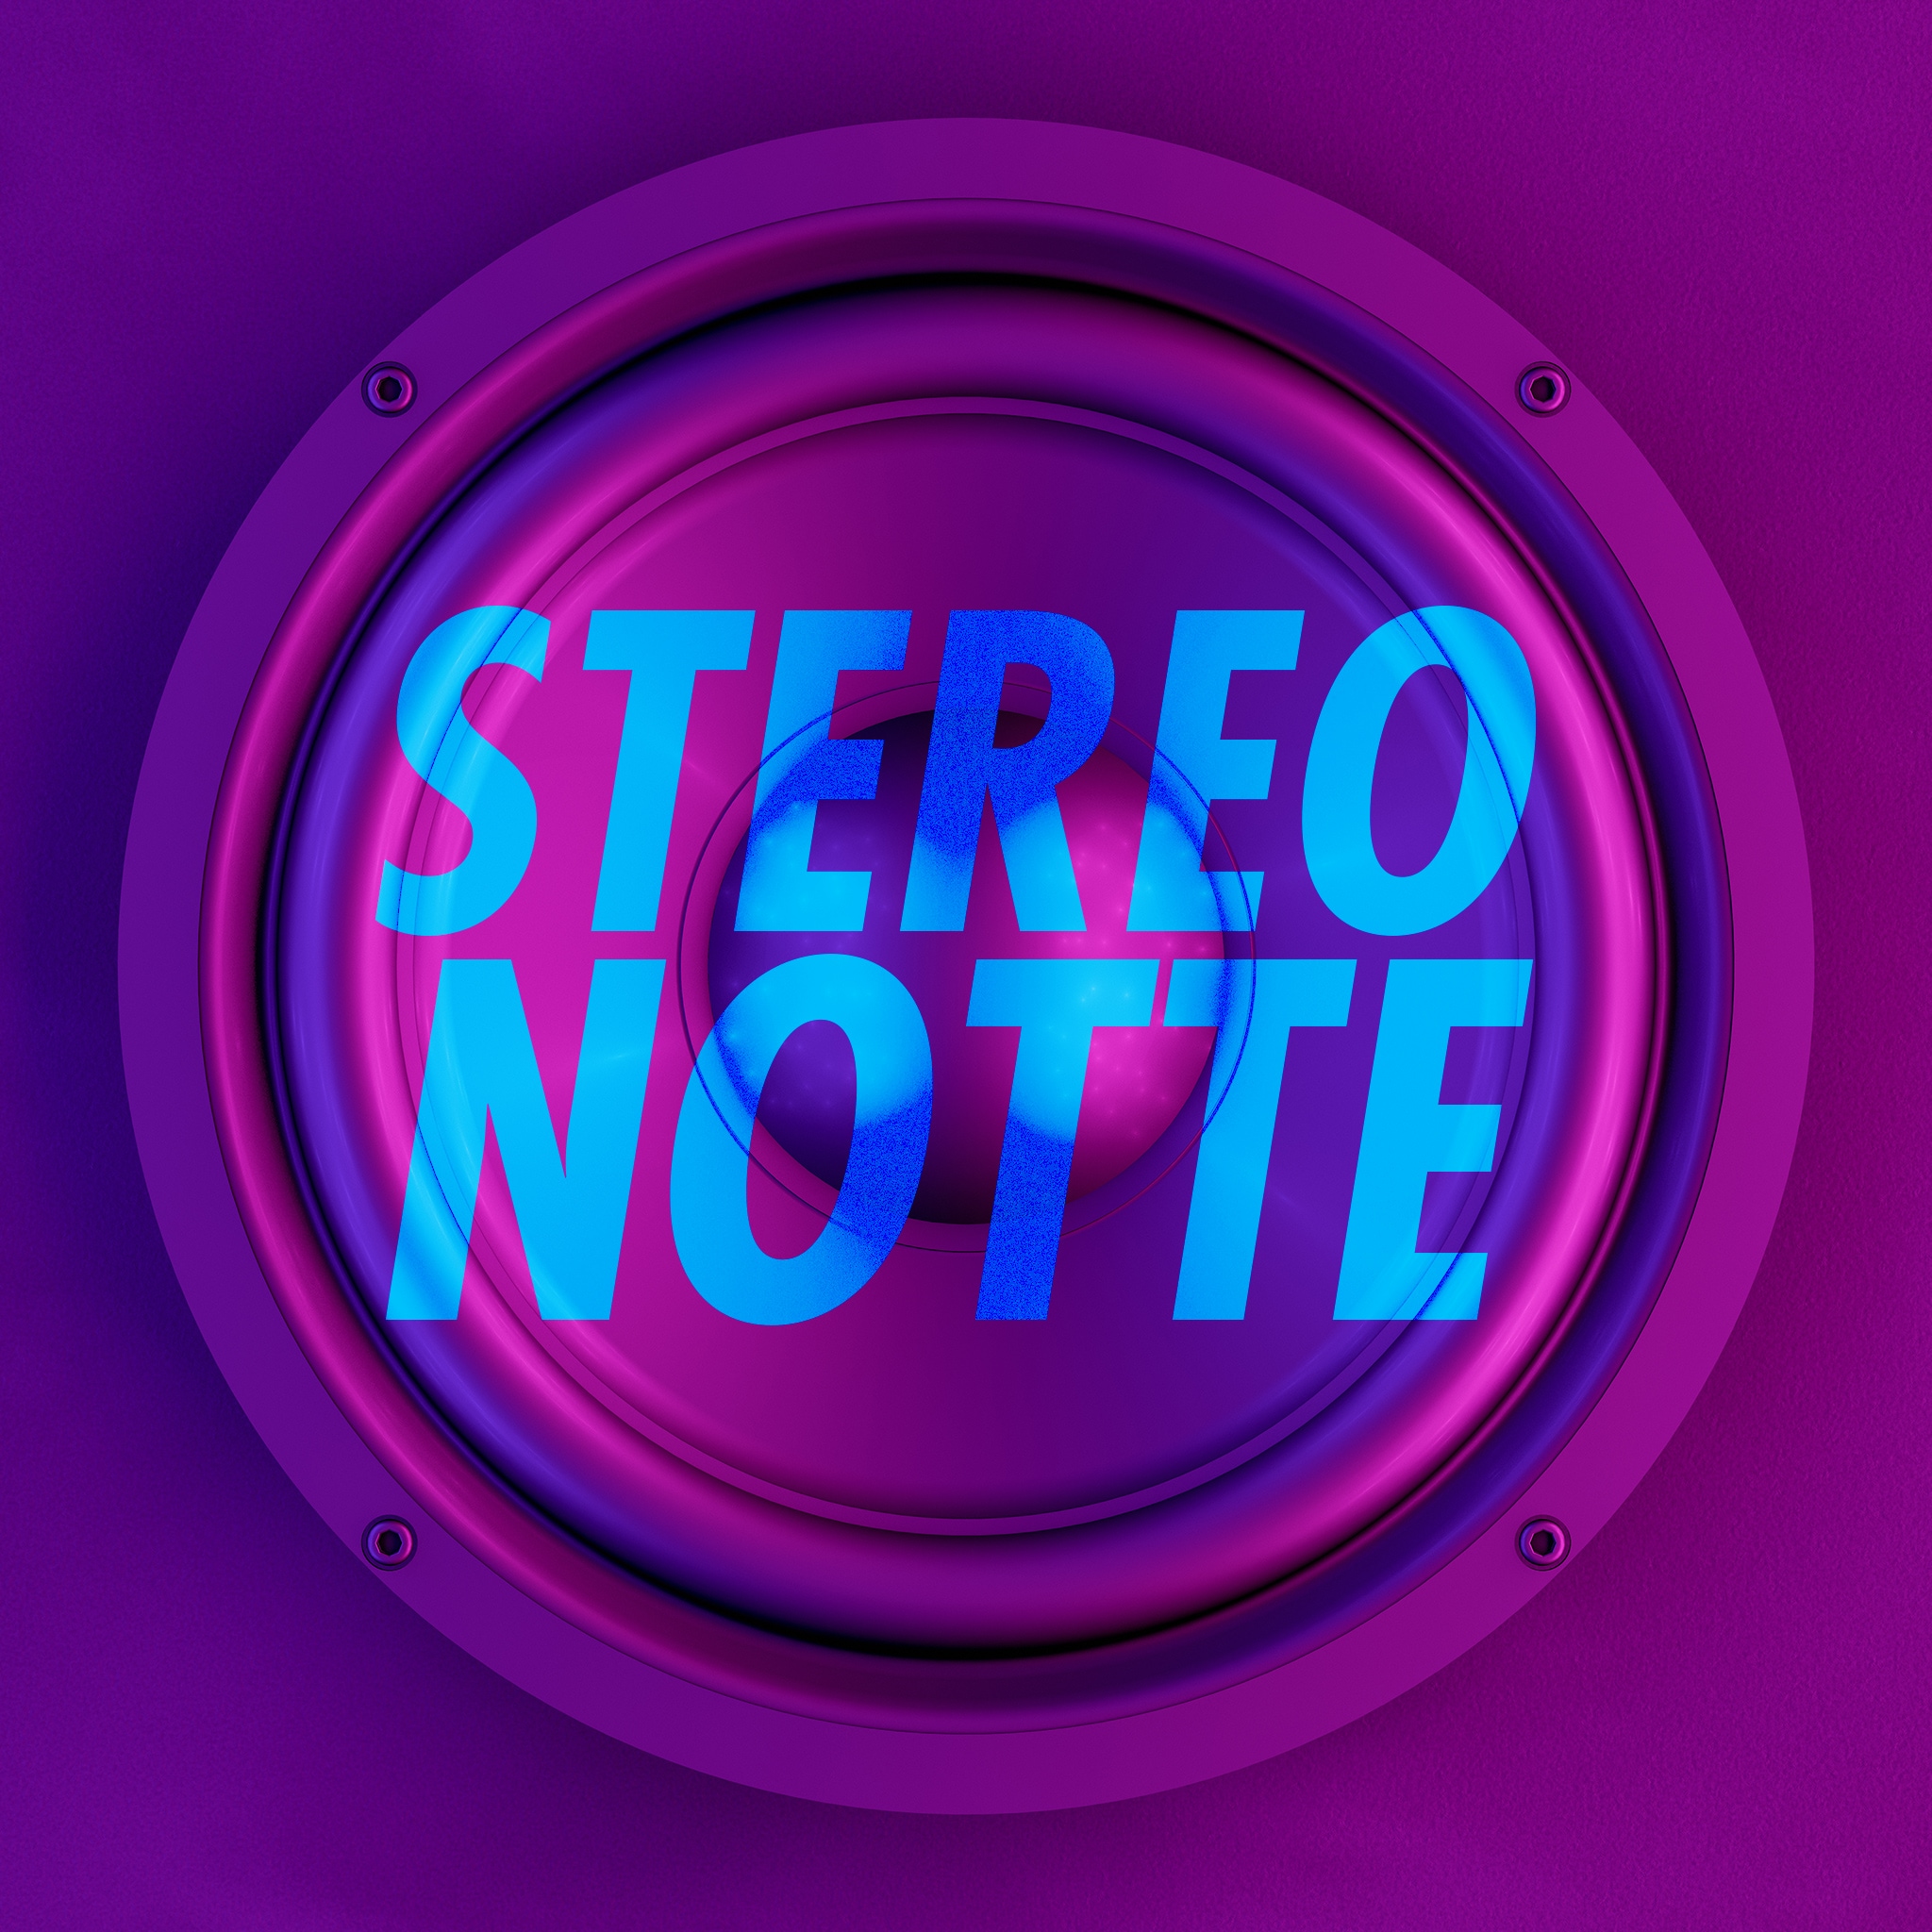 Rai Radio 1 Stereonotte